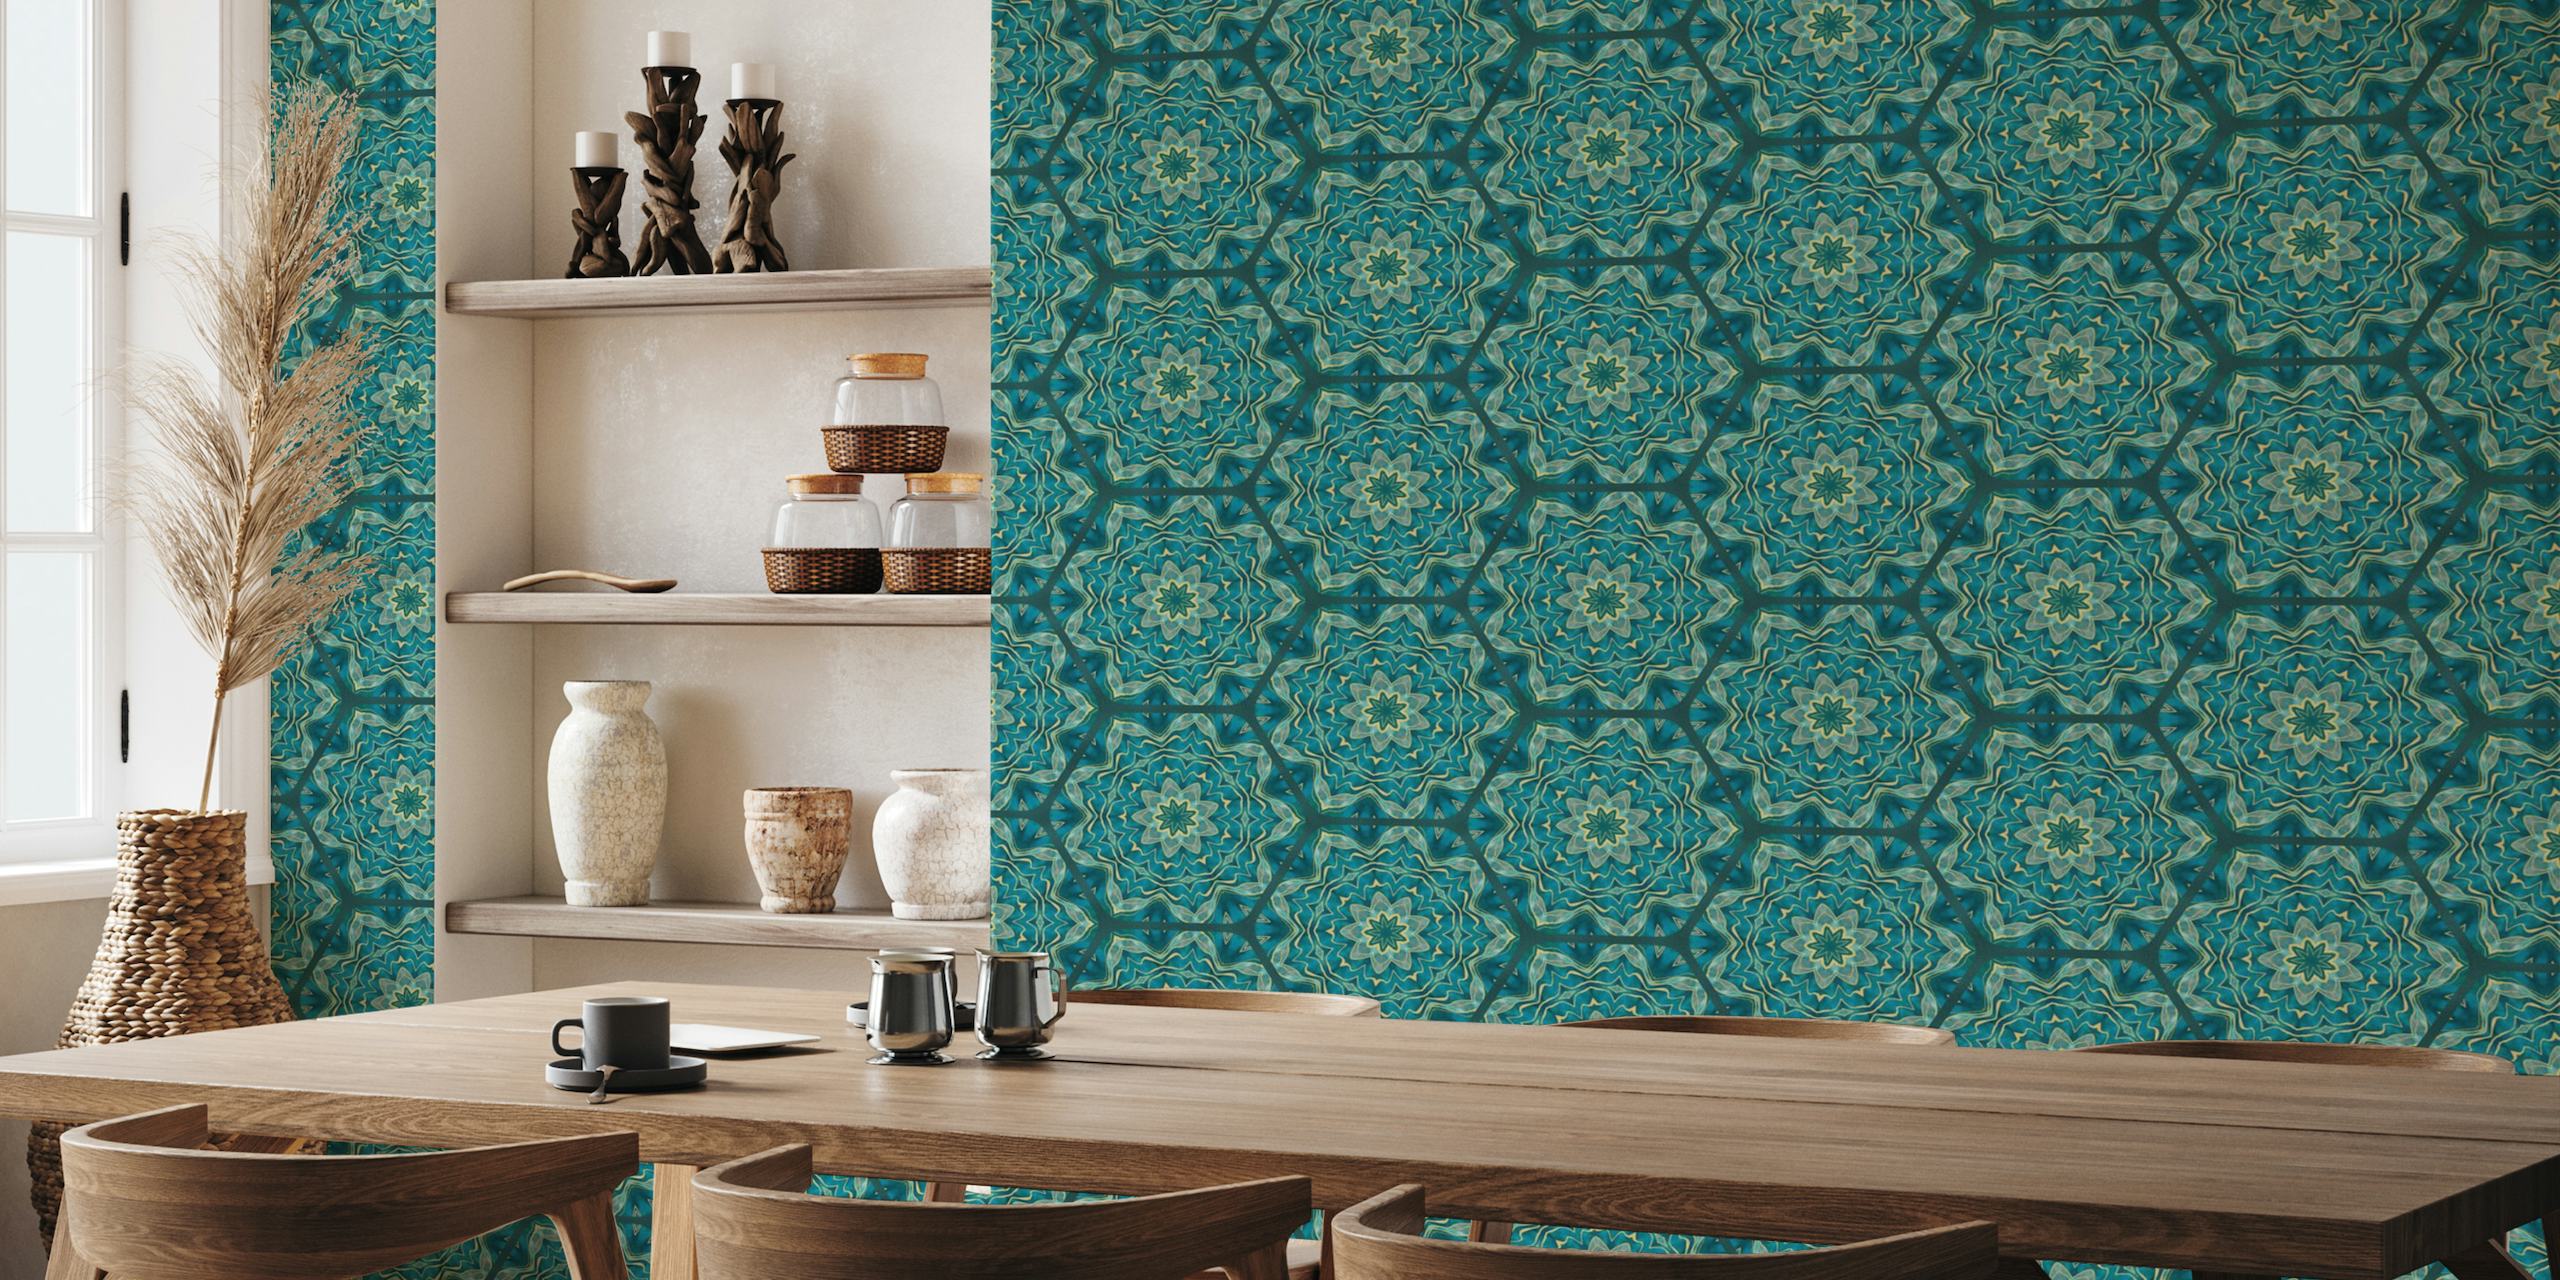 Oriental Inspired Hexagon Tiles Mediterranean Teal Gold papel pintado